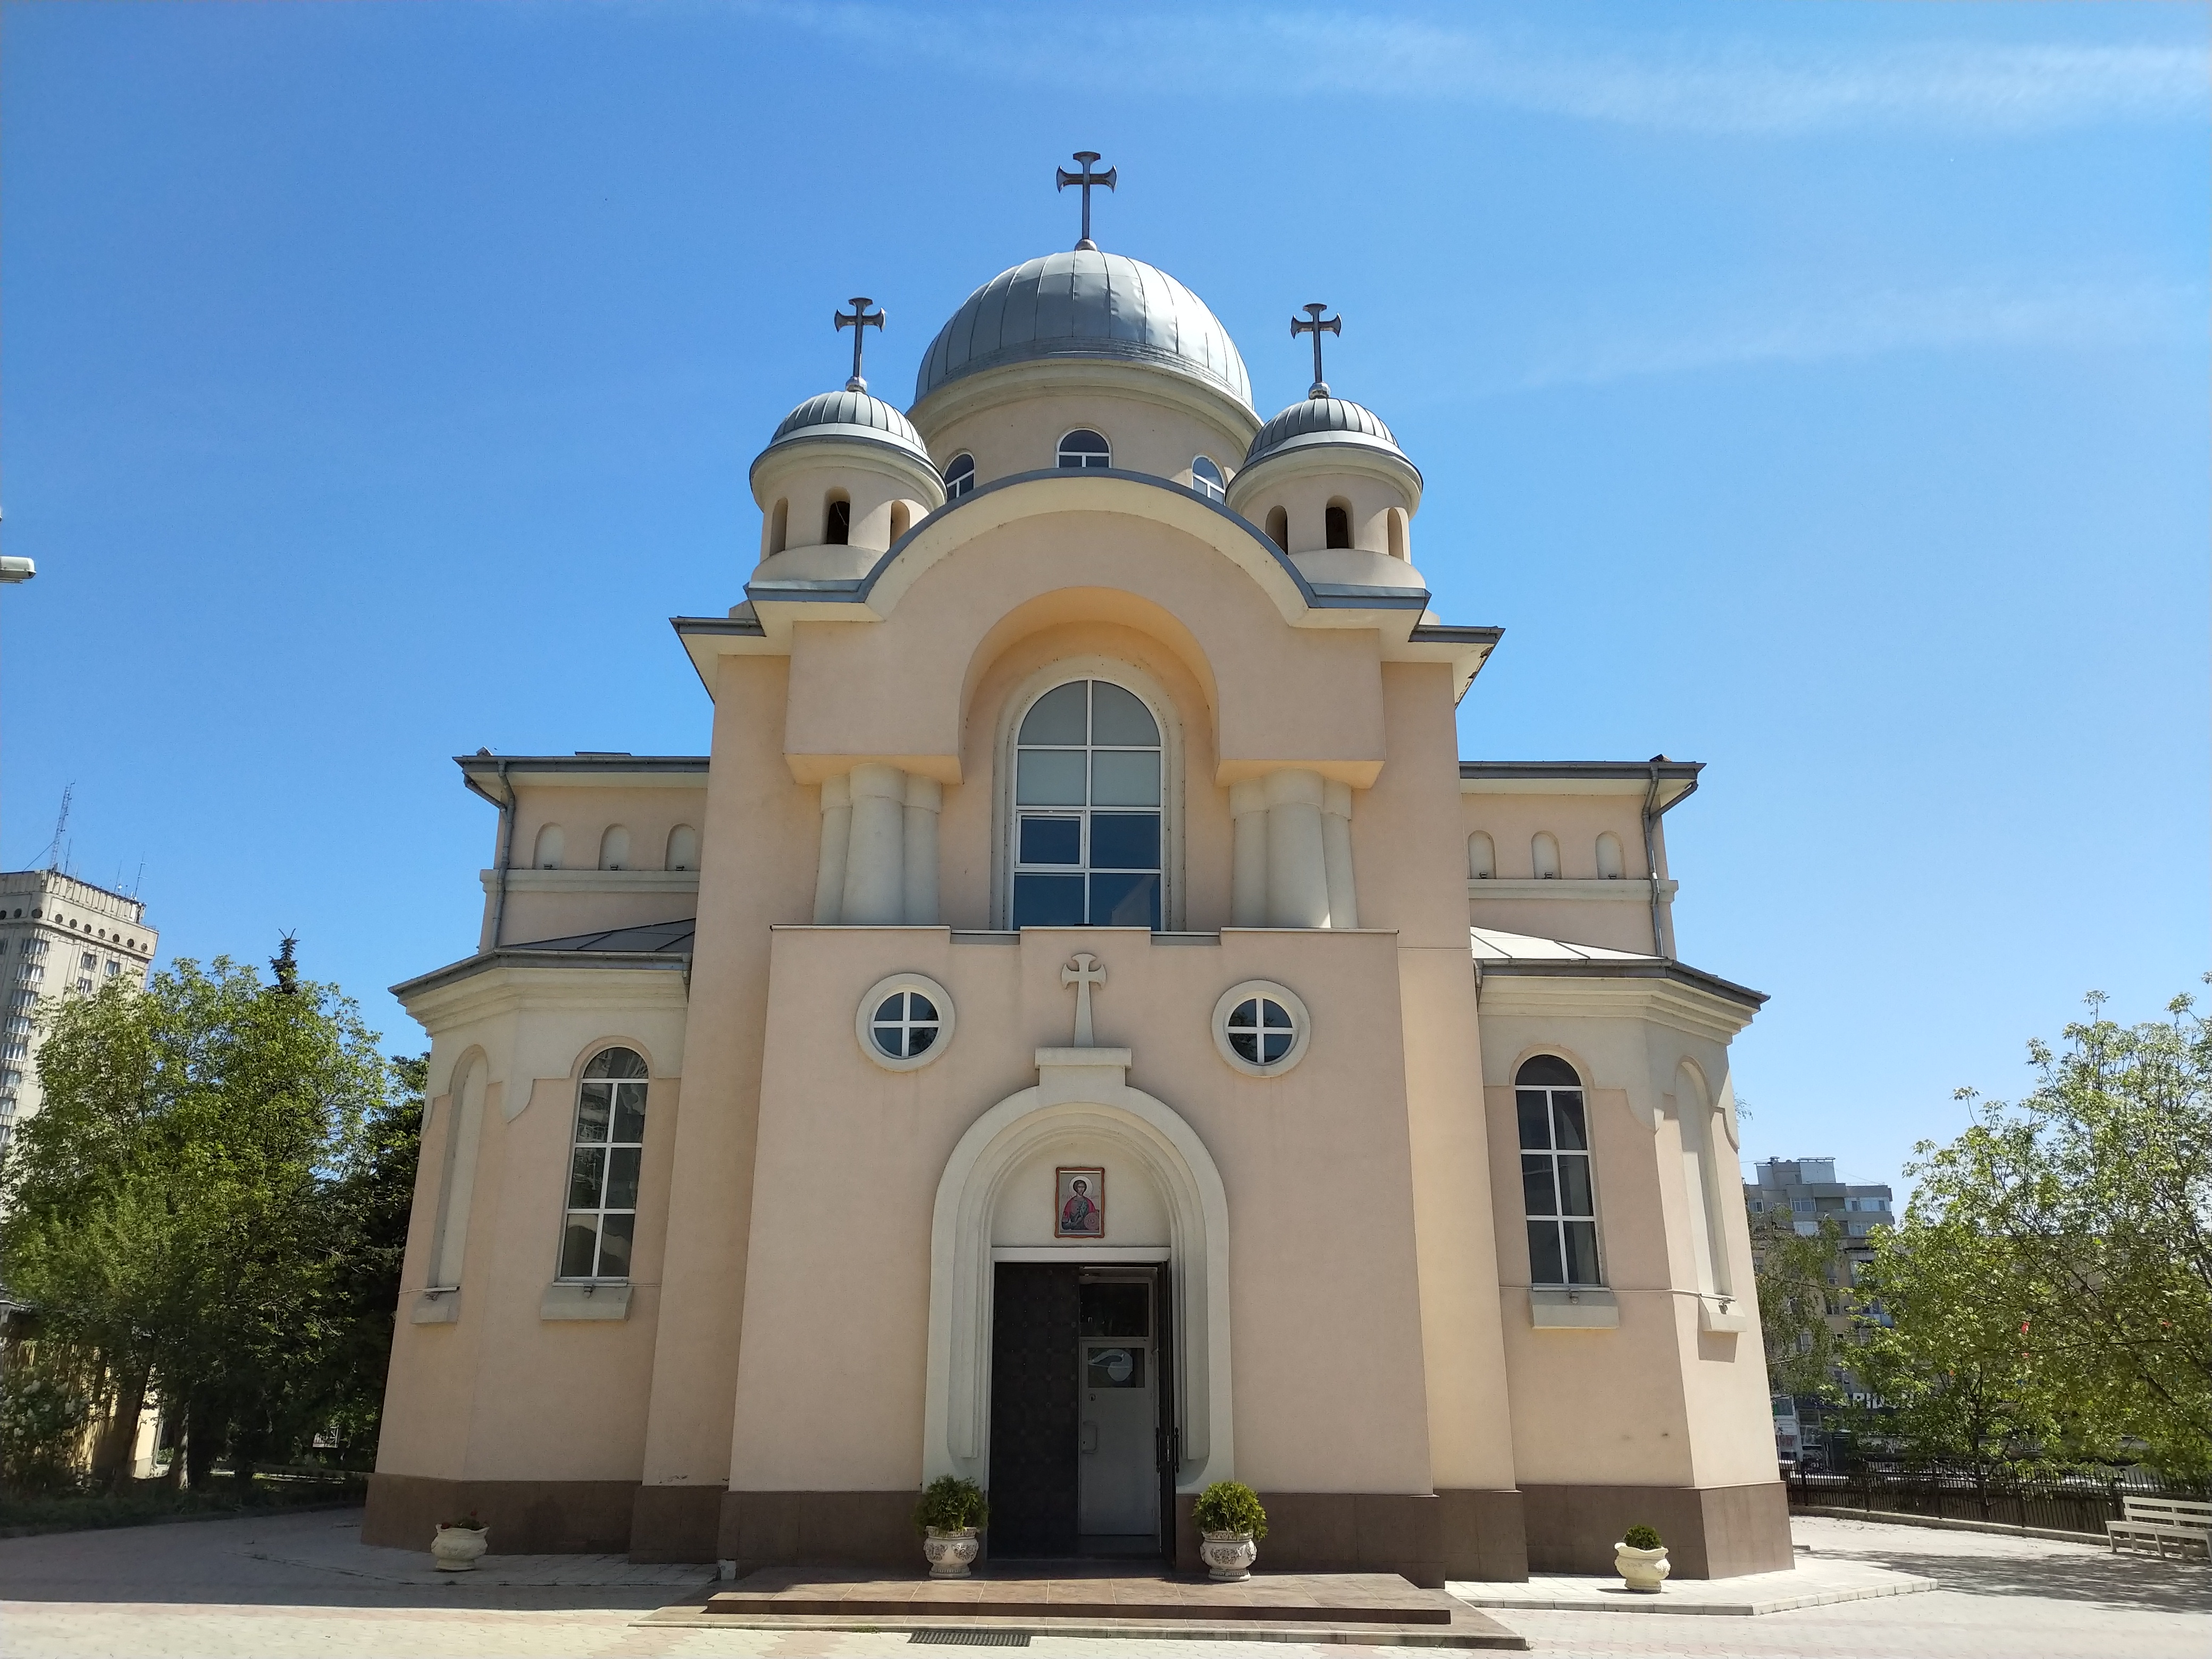 MD, Orasul Chişinău, Biserica Sfintul Mucenic Valeriu